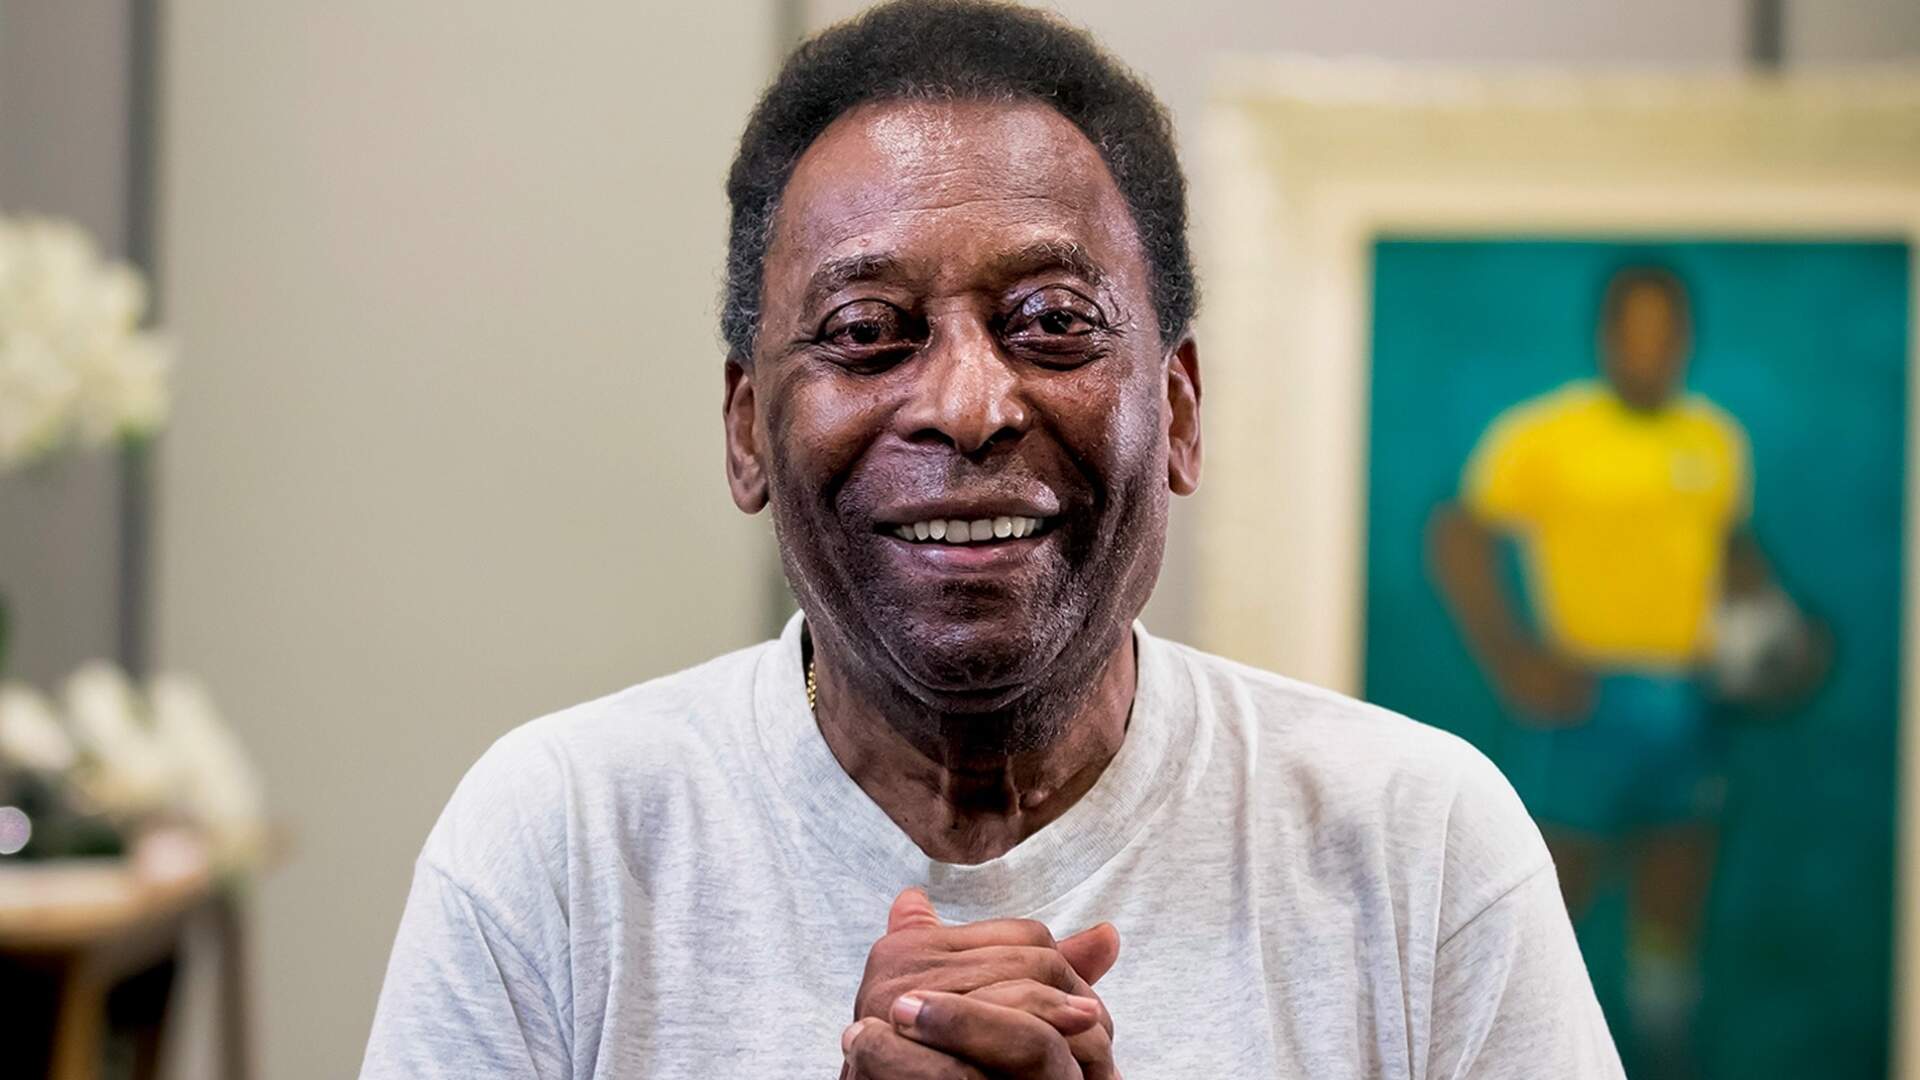 Adeus ao Rei Pelé: confira detalhes sobre o velório do maior jogador da história do futebol - Metropolitana FM